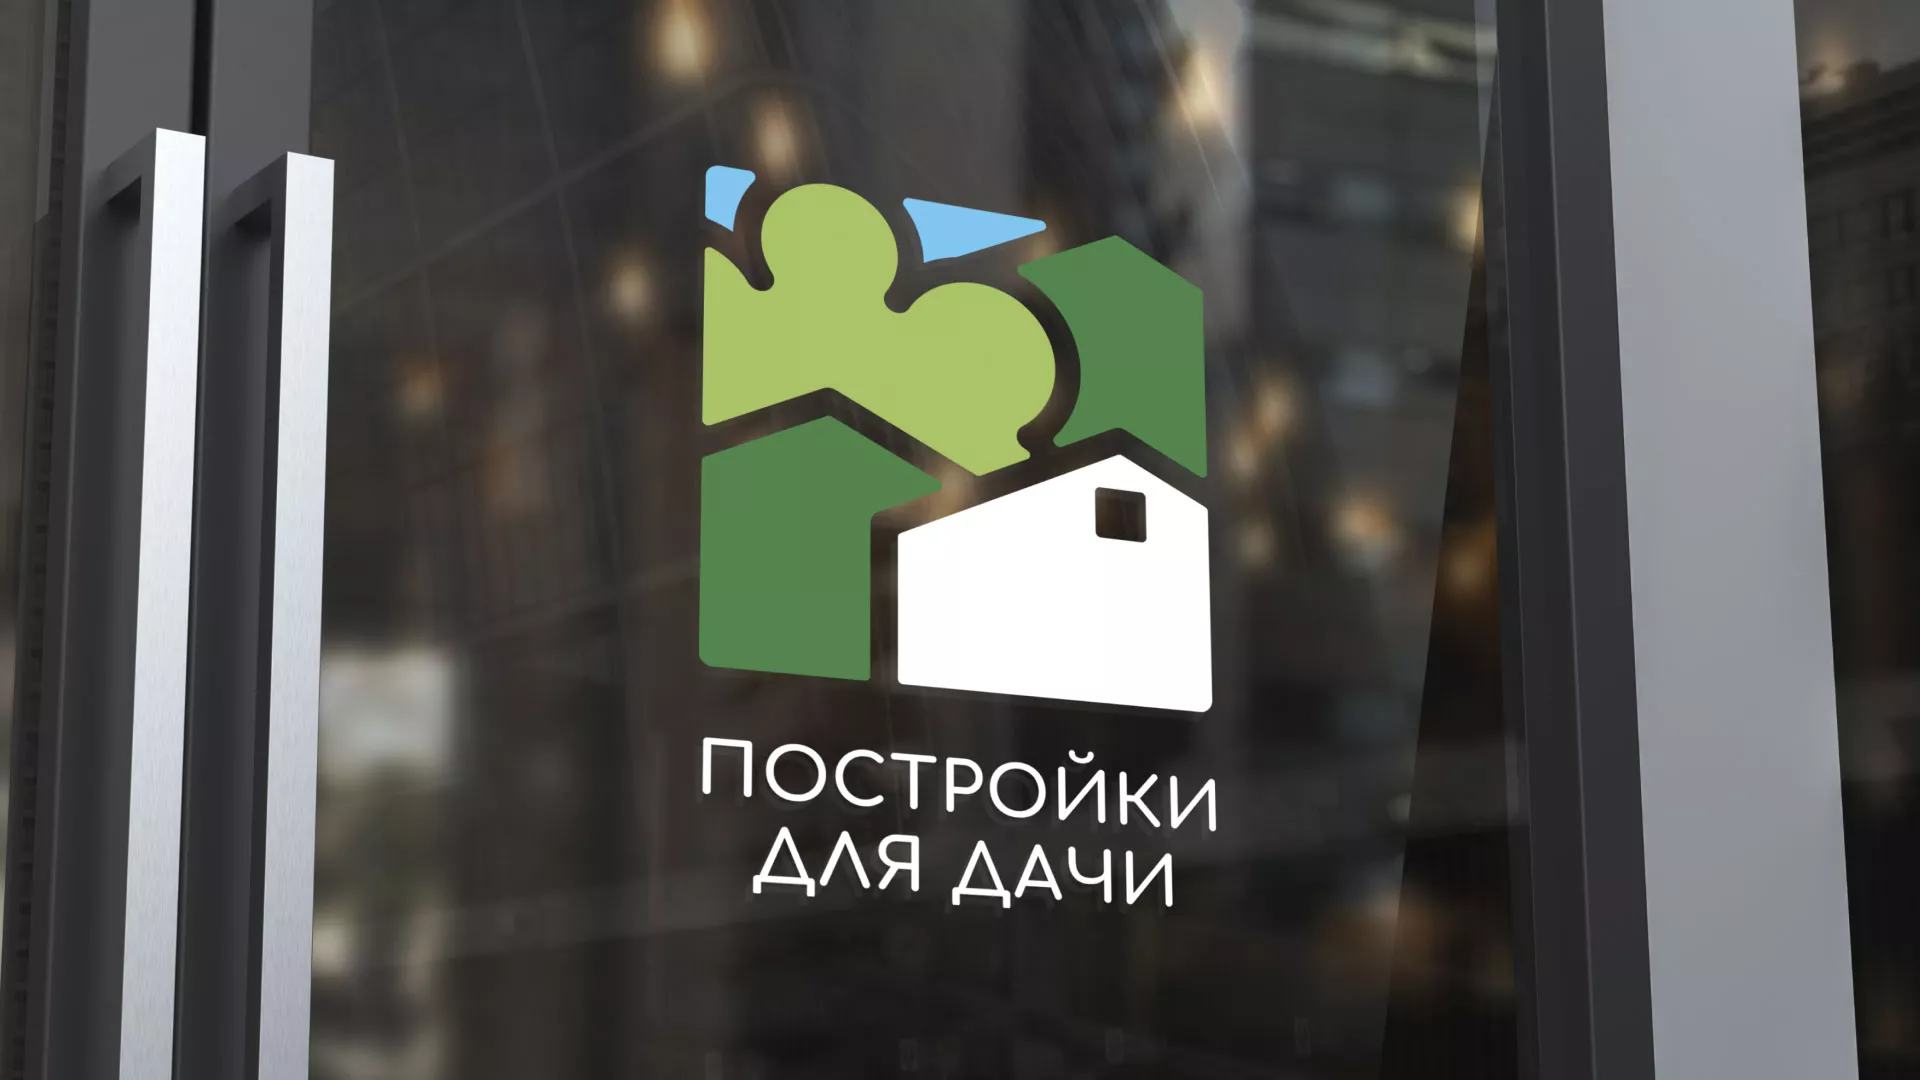 Разработка логотипа в Белой Калитве для компании «Постройки для дачи»